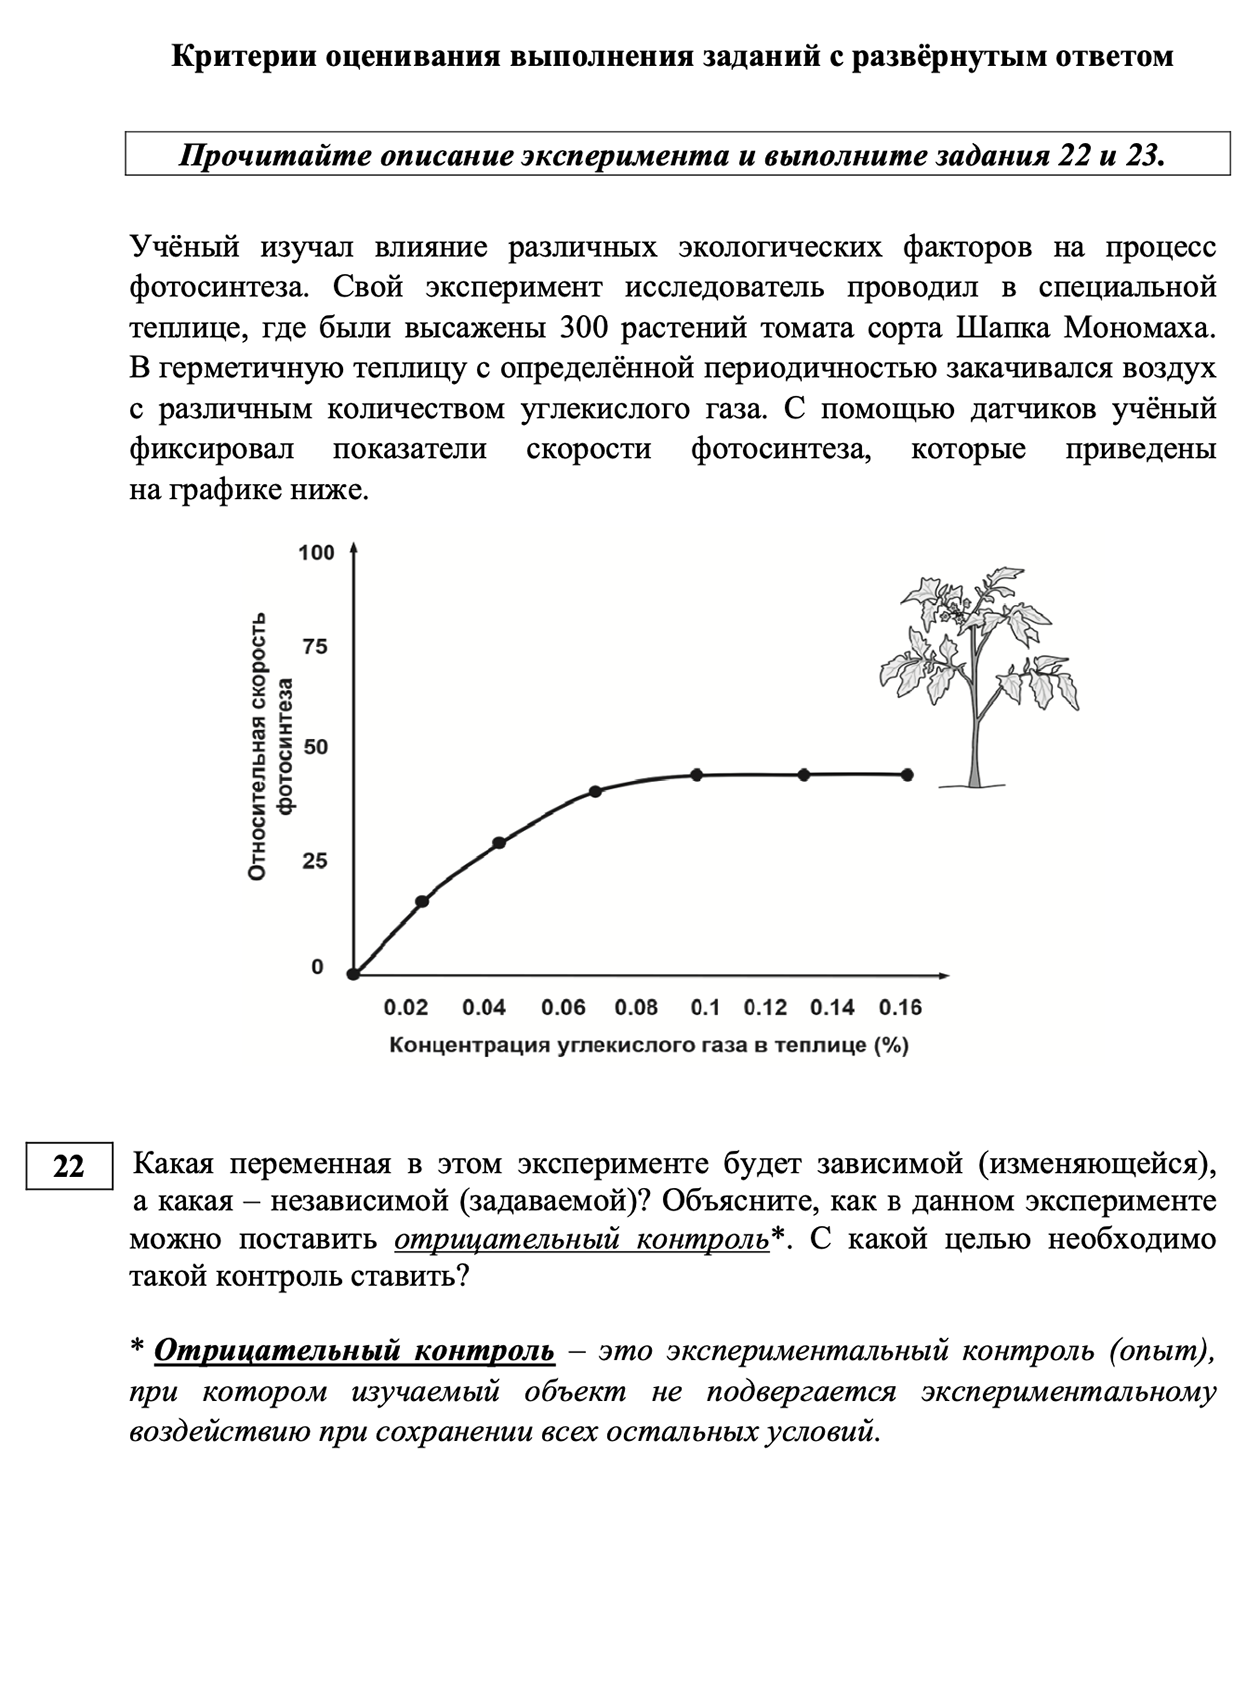 Критерии оценивания заданий с развернутым ответом. Источник: fipi.ru